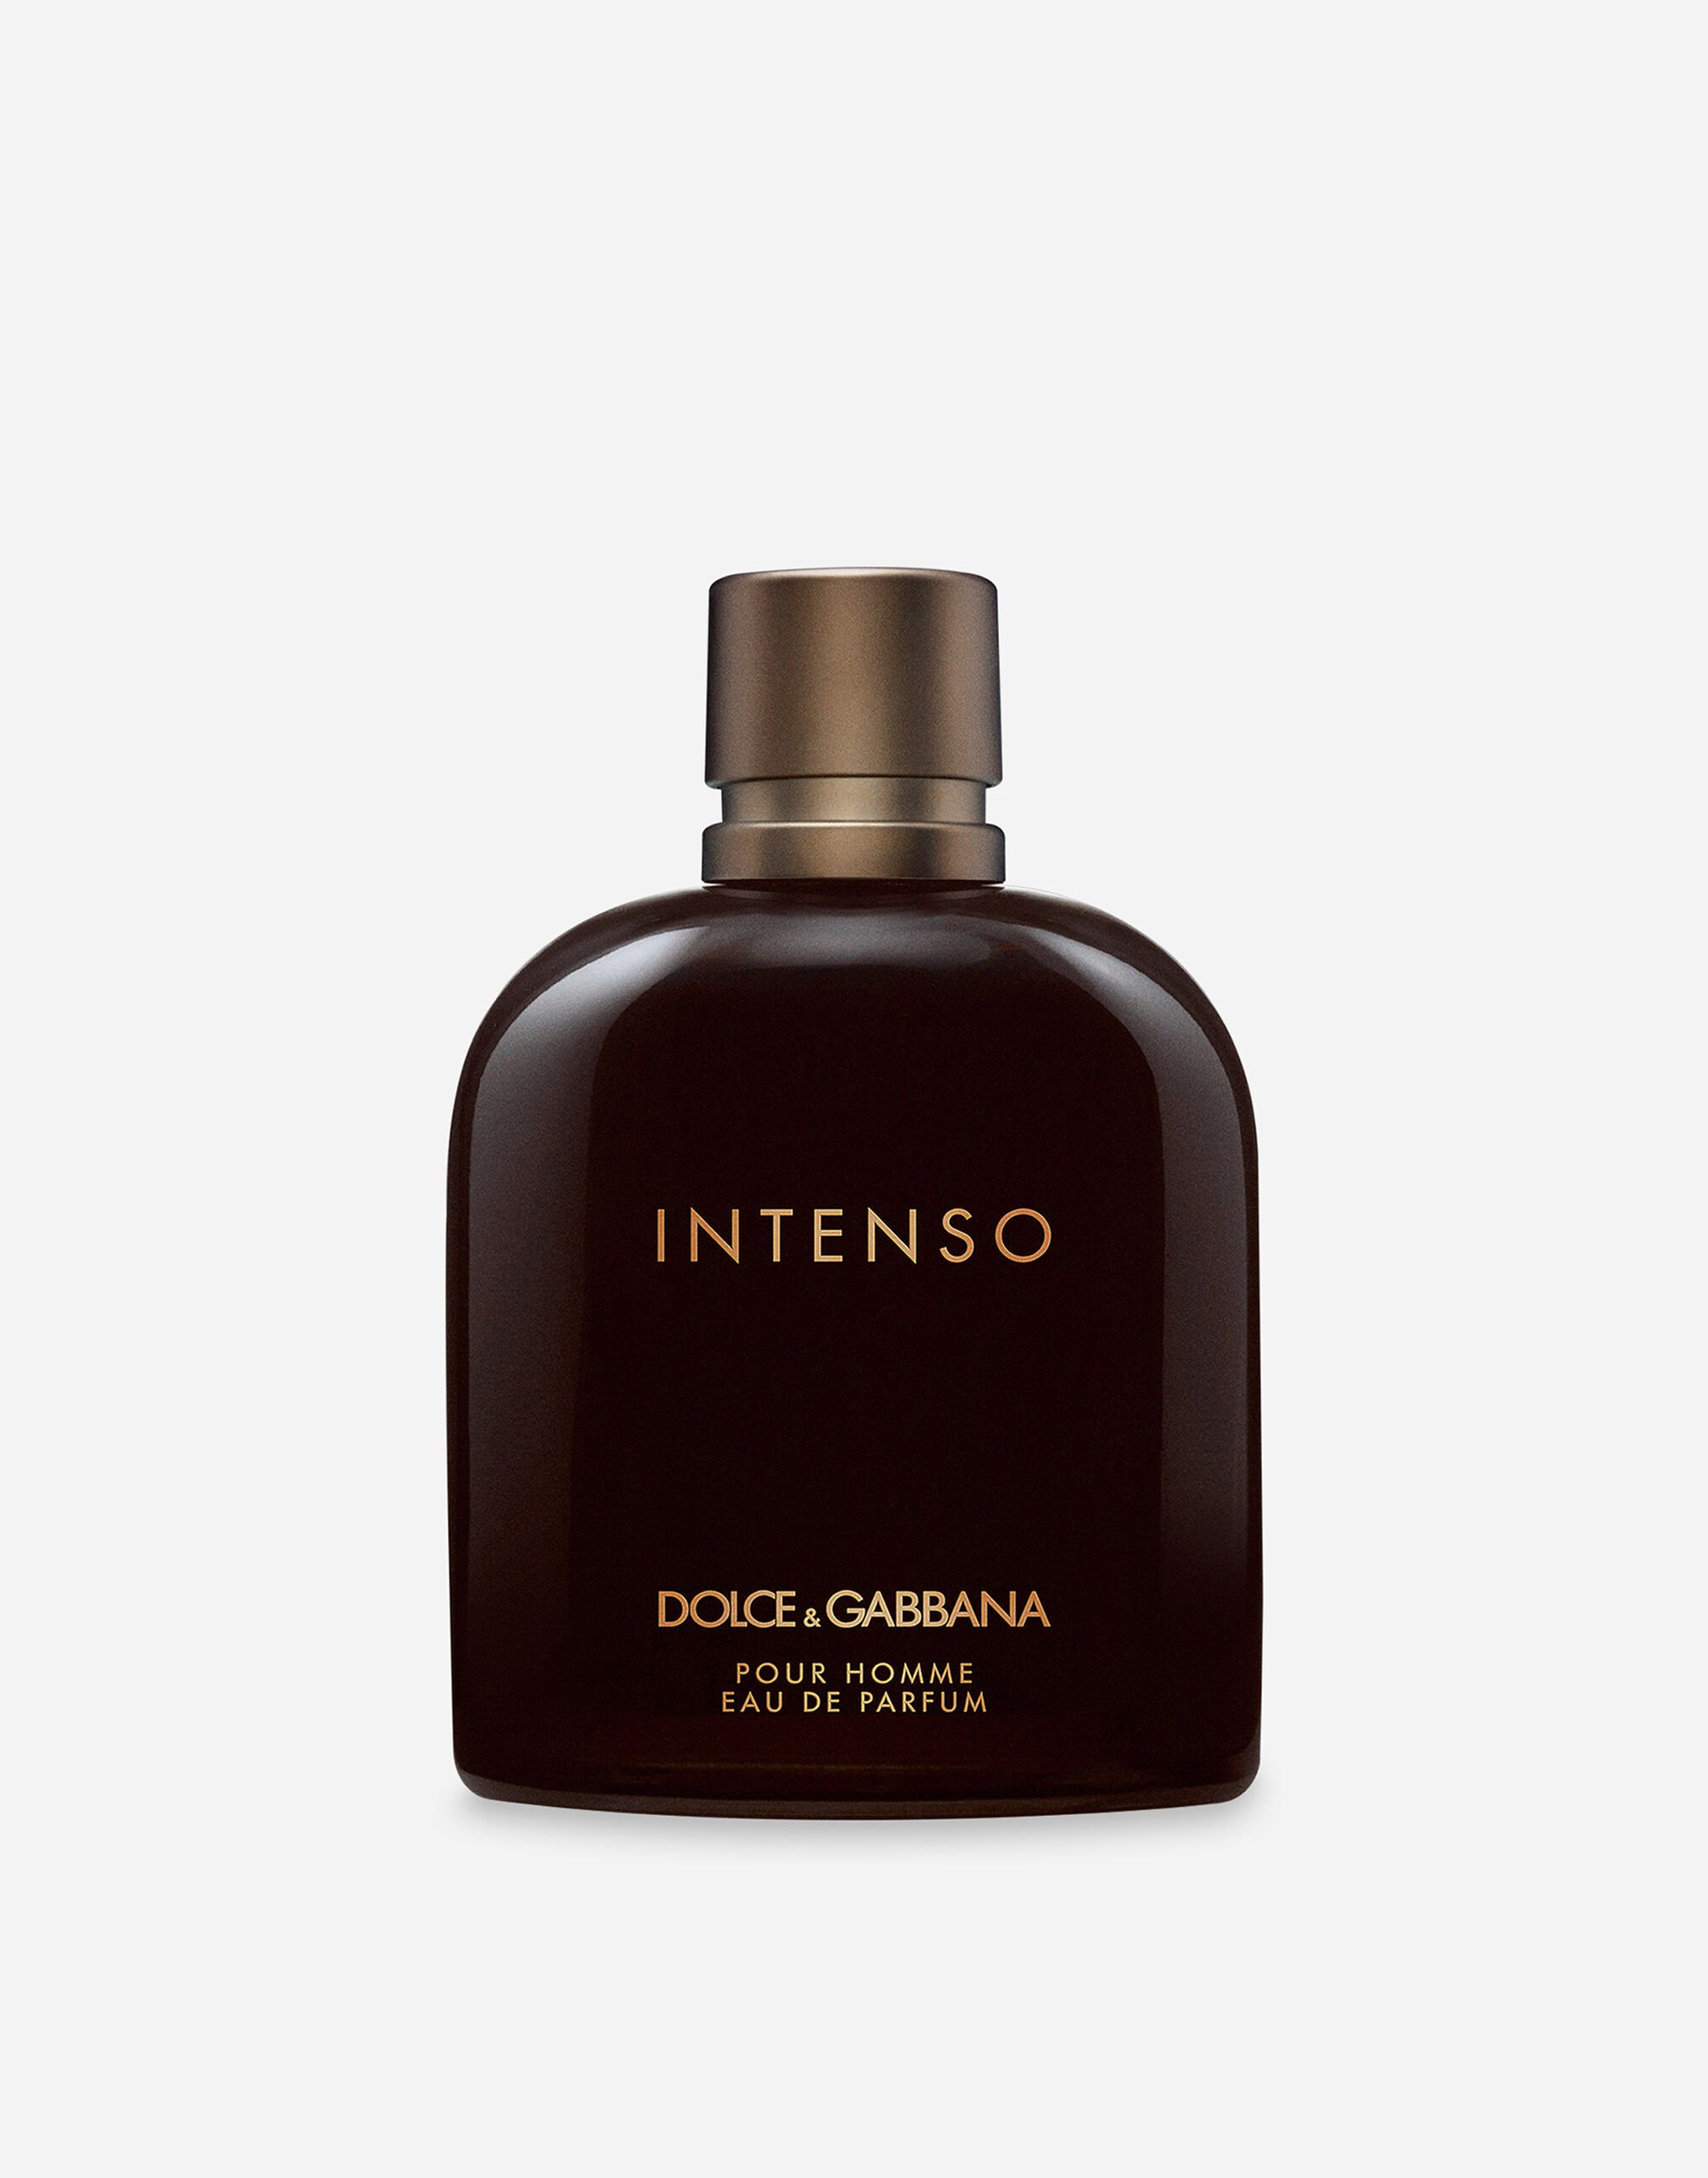 Dolce & Gabbana Intenso Eau de Parfum - VT001KVT000